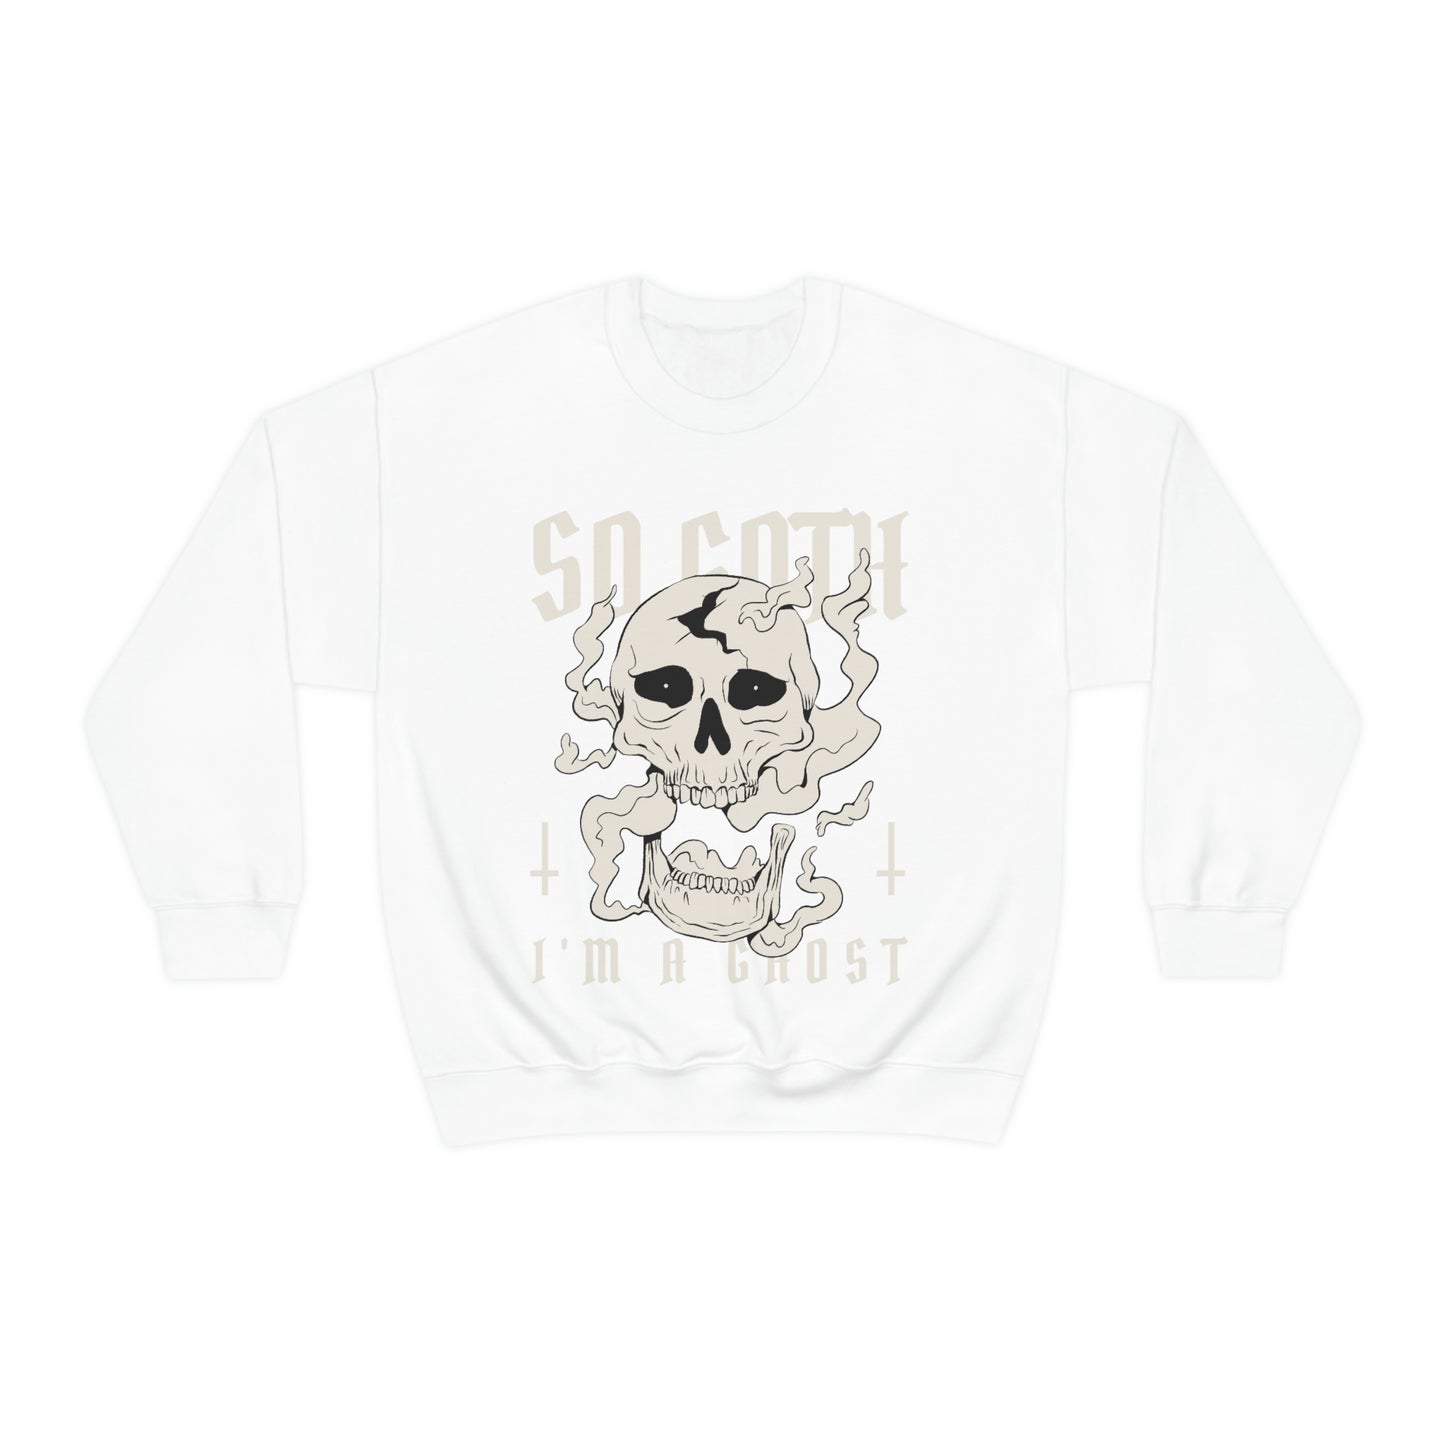 So Goth Im A Ghost Goth Aesthetic Sweatshirt